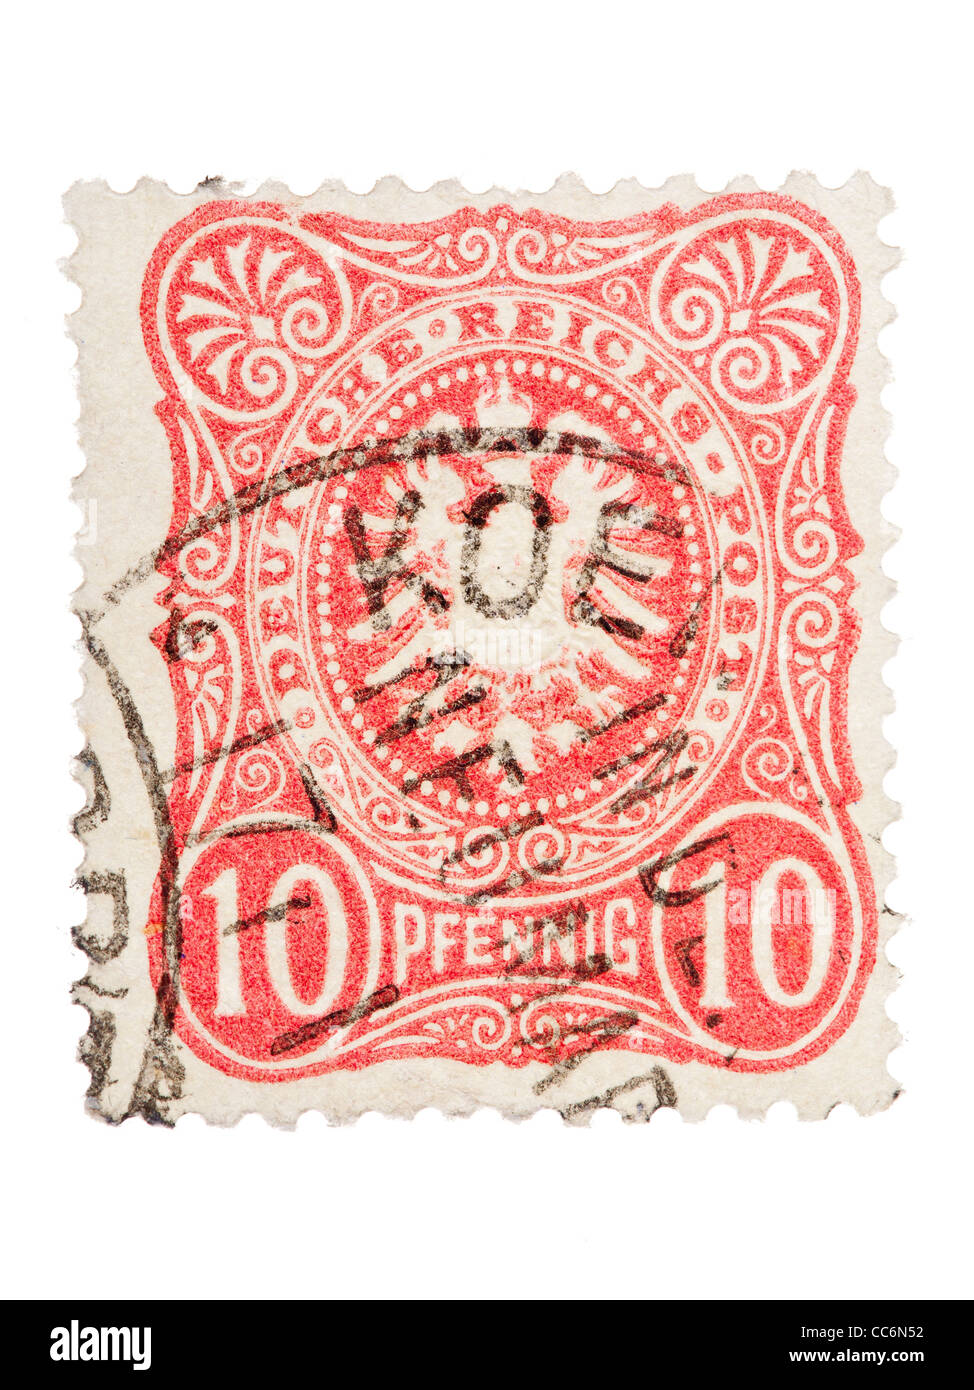 Francobollo: impero tedesco, Germanio, 1879/ 1880, 10 pfennig, stampigliato Foto Stock